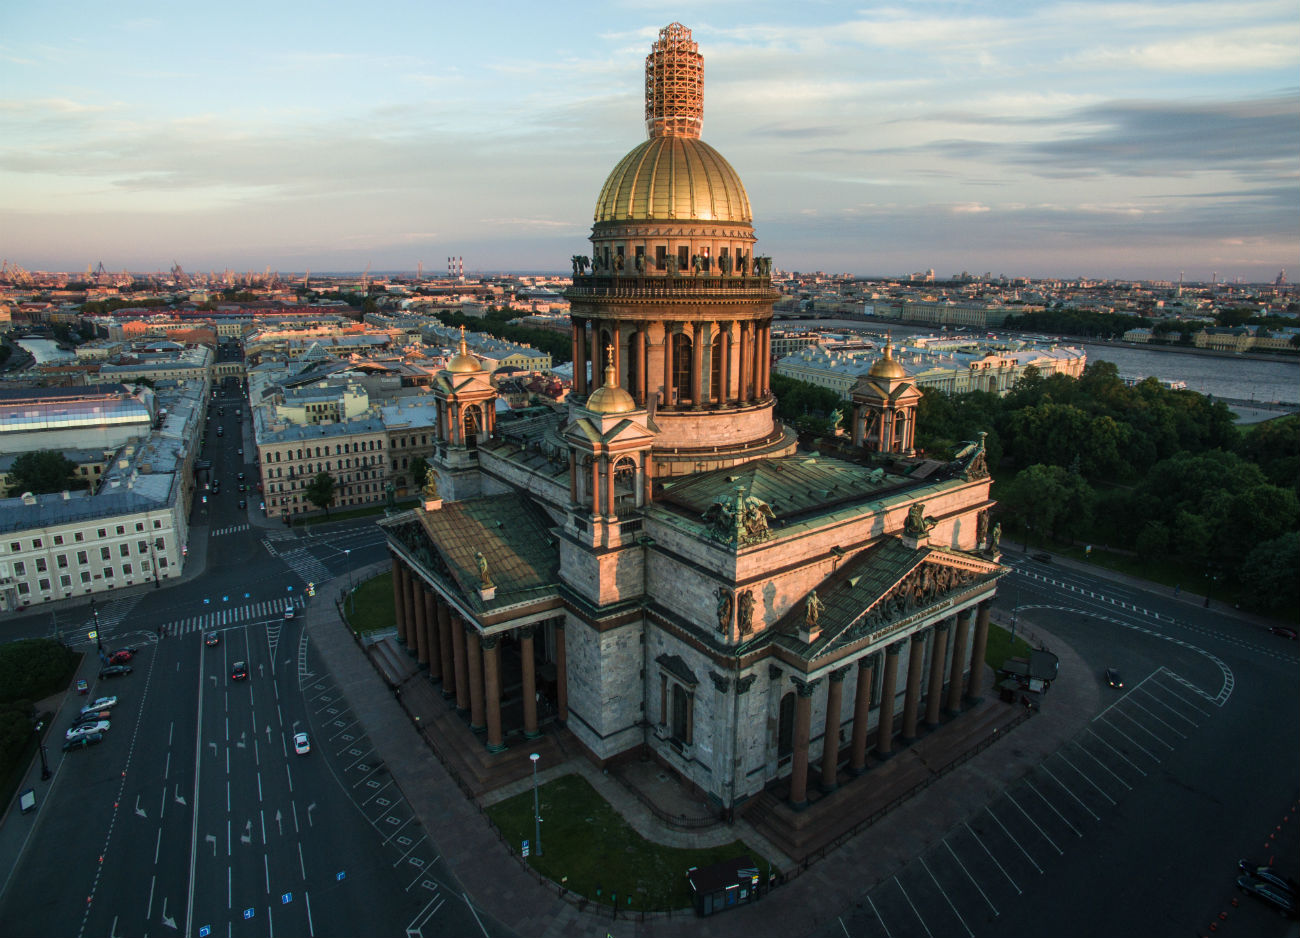 Katedrala sv. Izaka v Sankt Peterburgu je edinstveni arhitekturni spomenik. Gradnjo (ali, bolje rečeno, popolno obnovo starejše cerkve) je začel car Aleksander I. leta 1818. Najboljši predlog so izbirali preko natečaja, zmagal pa je francoski arhitekt Auguste de Montferrand. Gradnja se je zavlekla za 40 let, slavnostno odprtje je potekalo junija 1858. Katedralo opevajo mnogi pesniki in pisatelji, ki jih je navdušila veličina te konstrukcije. Fjodor Tjutčev je denimo zapisal: »Gledal sem, stoječ nad Nevo, / kako ima Izak-velikan, / v zmrznjeni meglici / svetlečo kupolo zlato.«